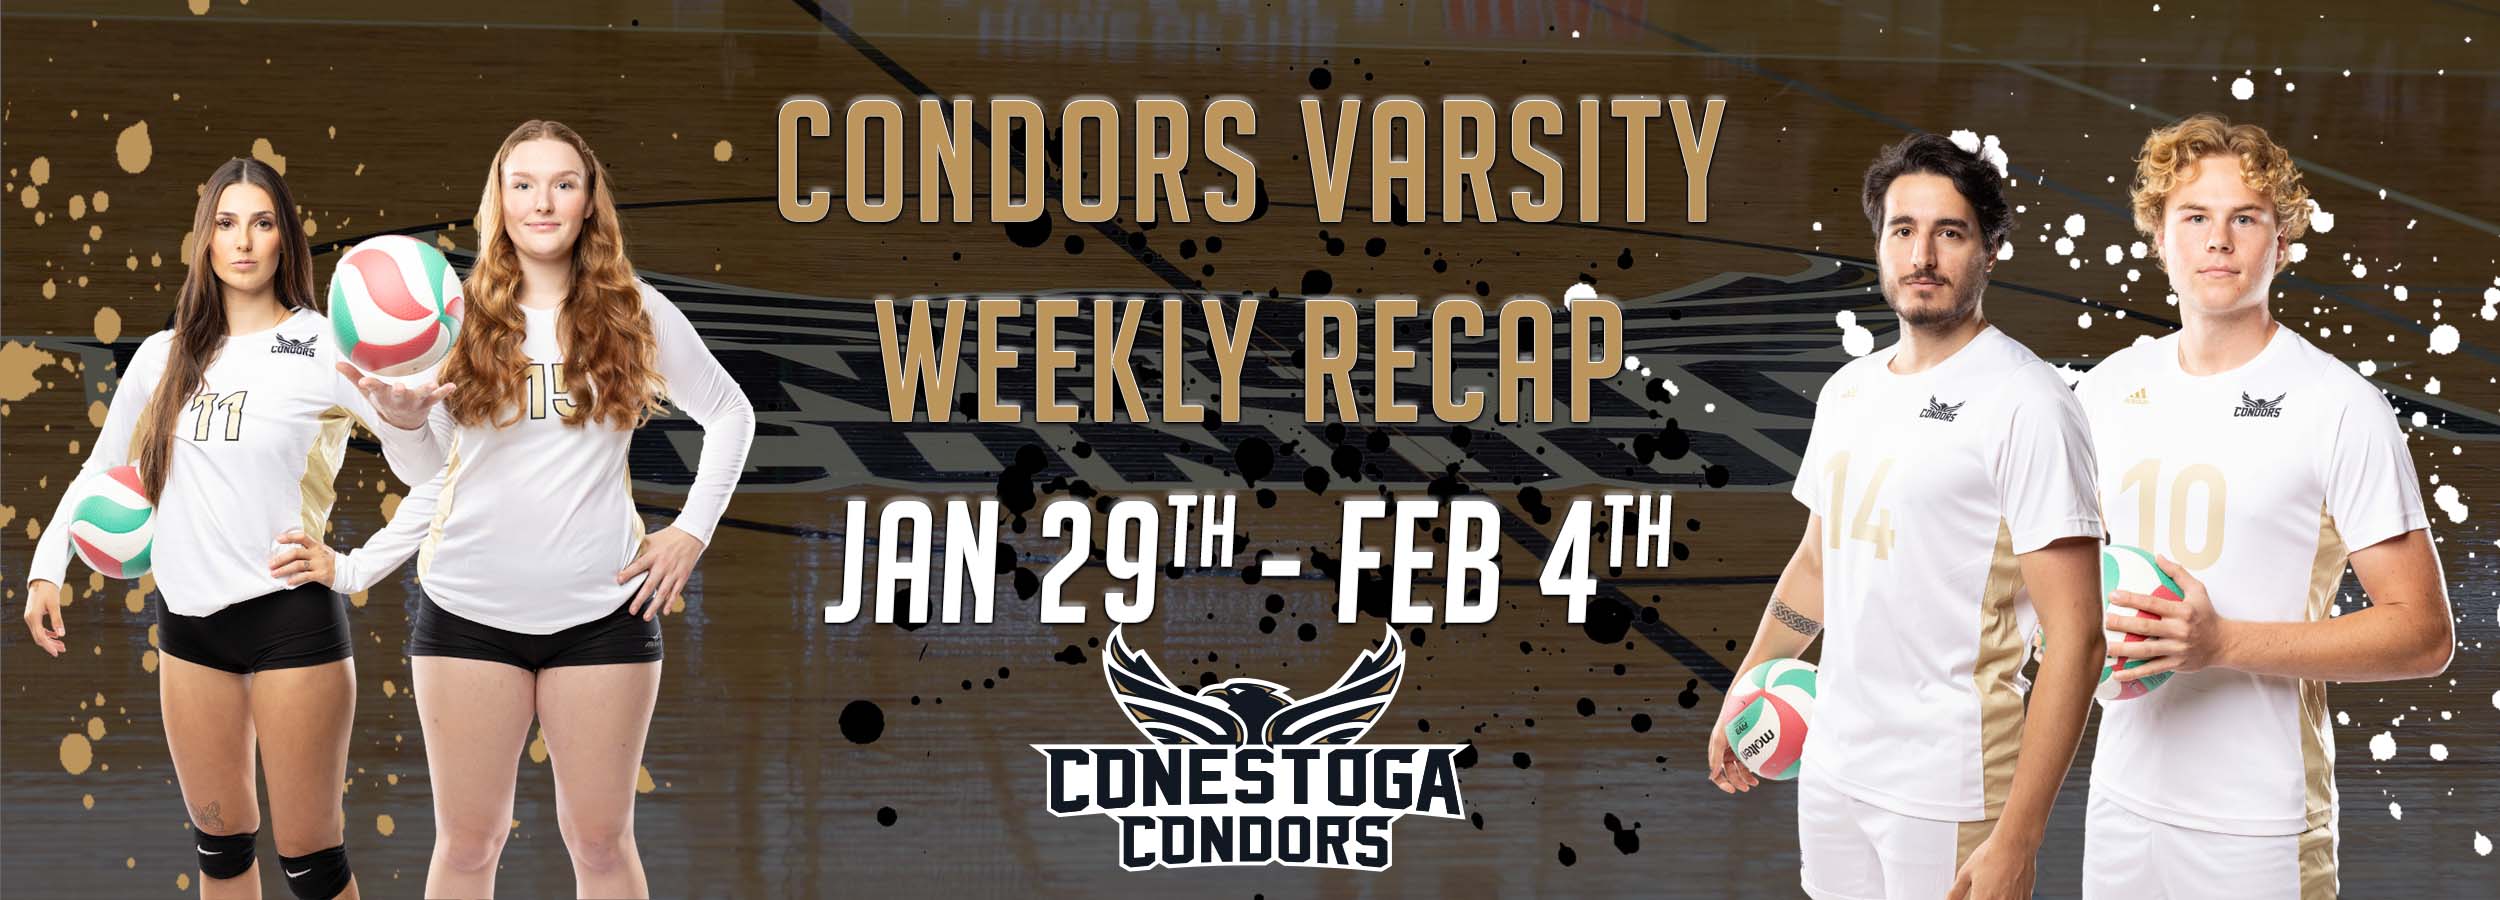 Condors Varsity Weekly Recap: January 29 - February 4